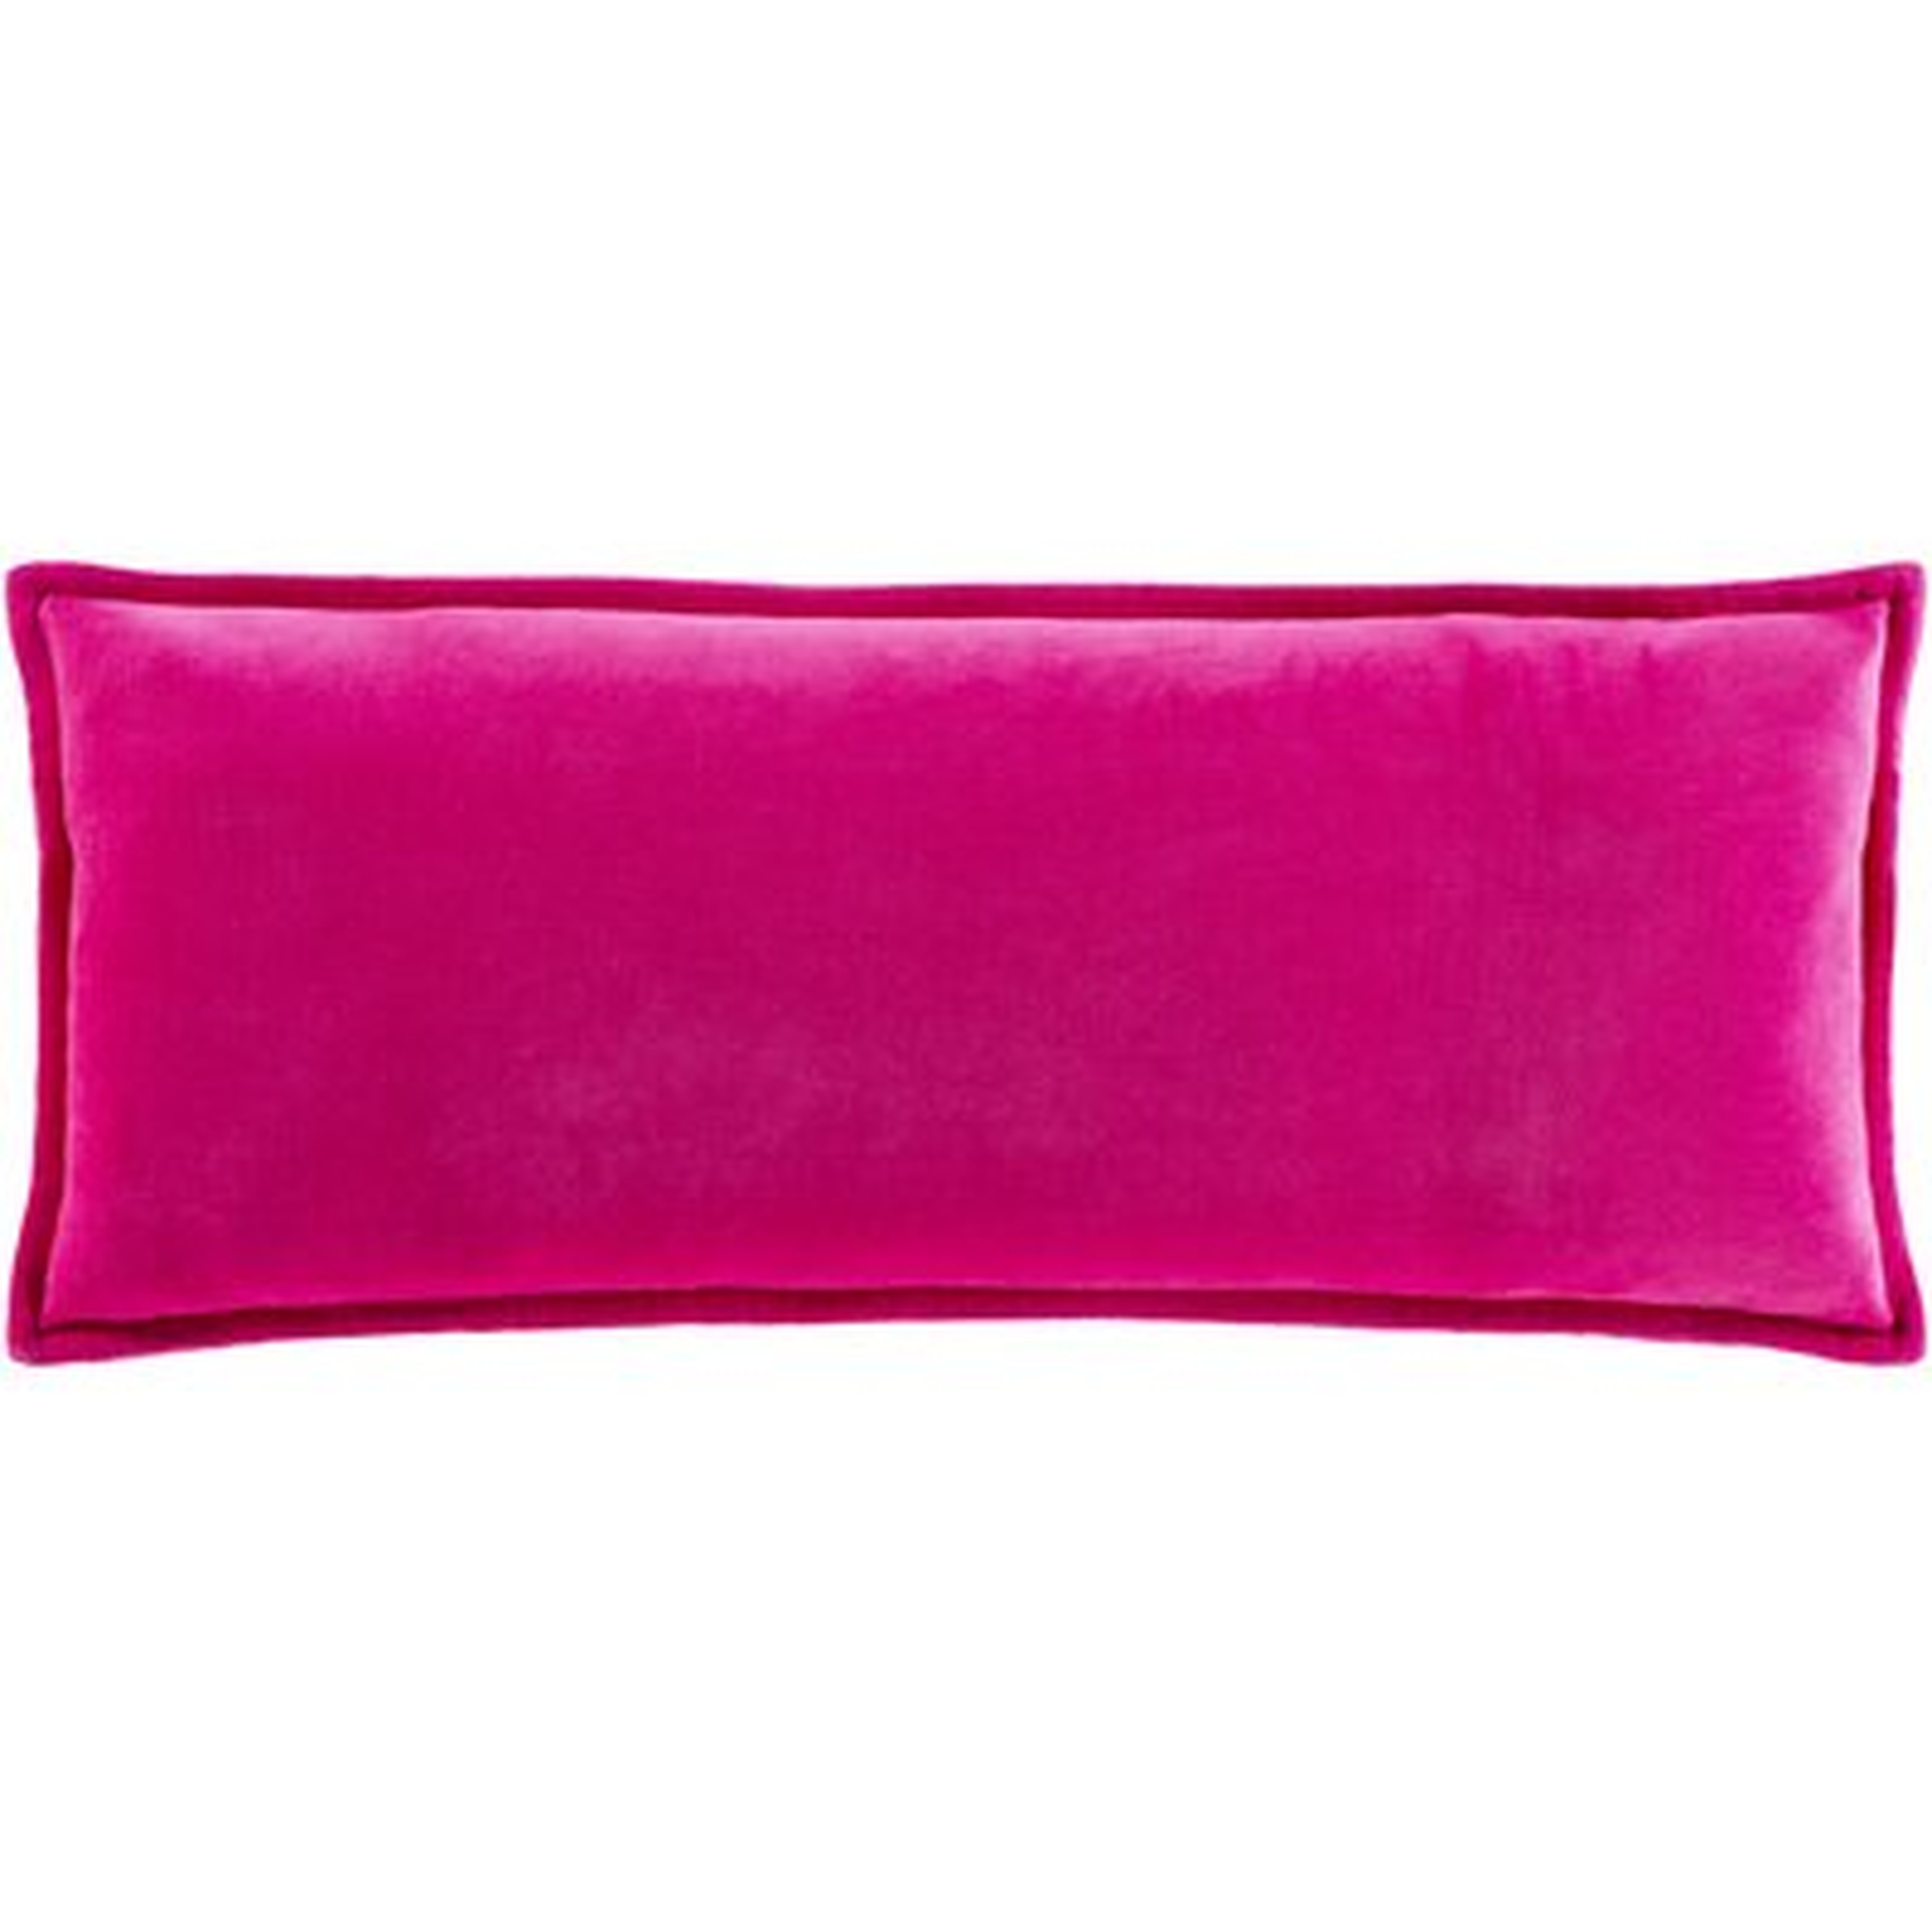 Ahnaya Cotton Lumbar Pillow Cover - Wayfair